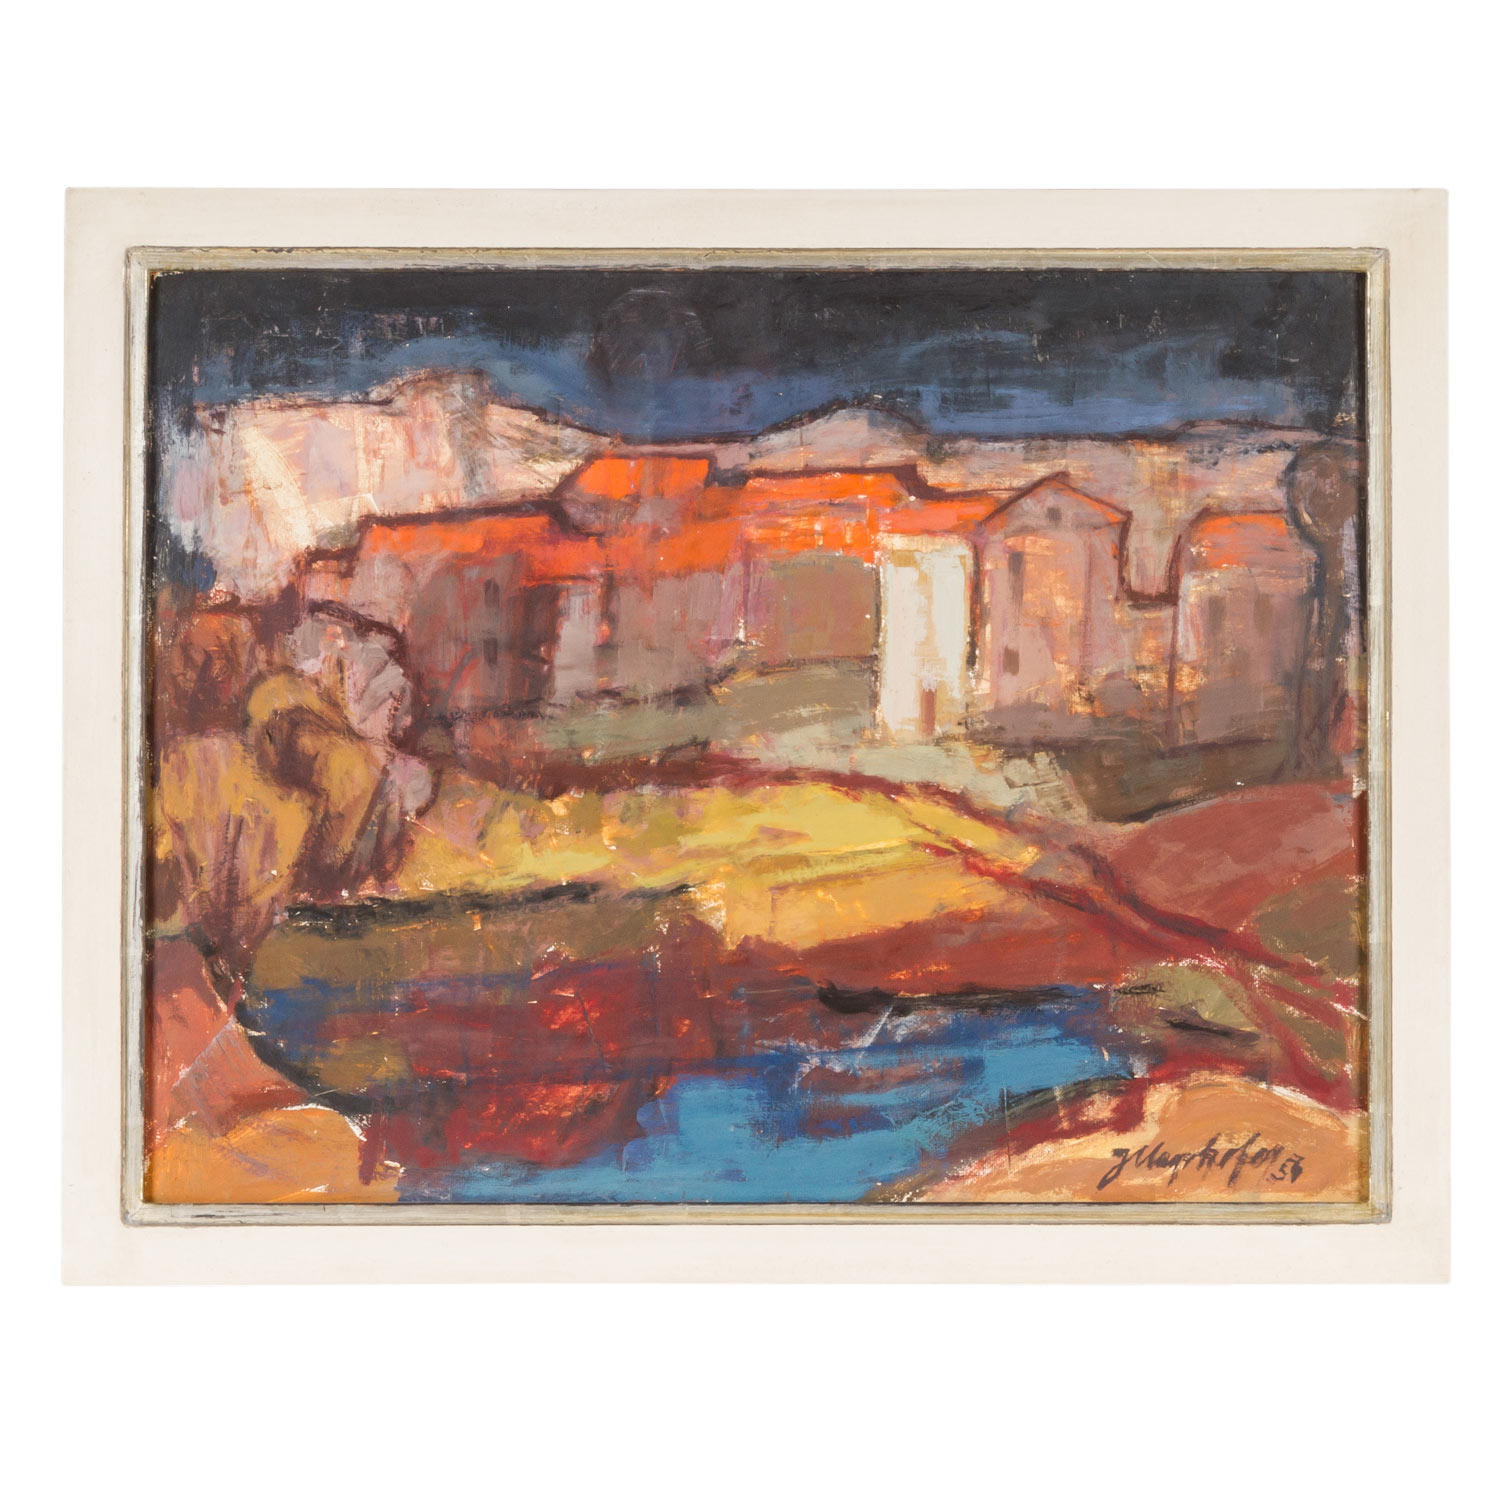 MAYRHOFER, JOSEF (1902 - 1962), "Landschaft", 1954, - Image 2 of 4